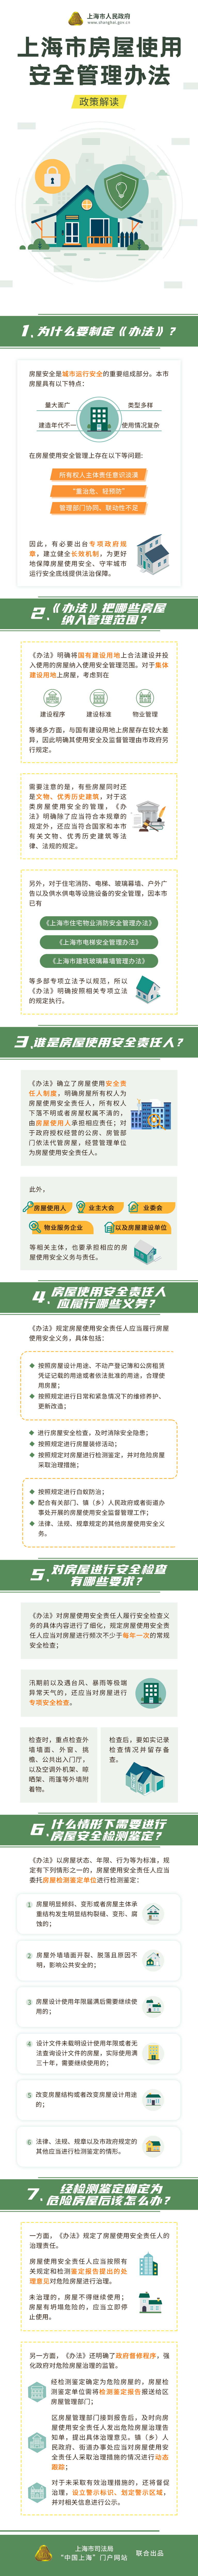 《上海市房屋使用安全管理办法》政策图解